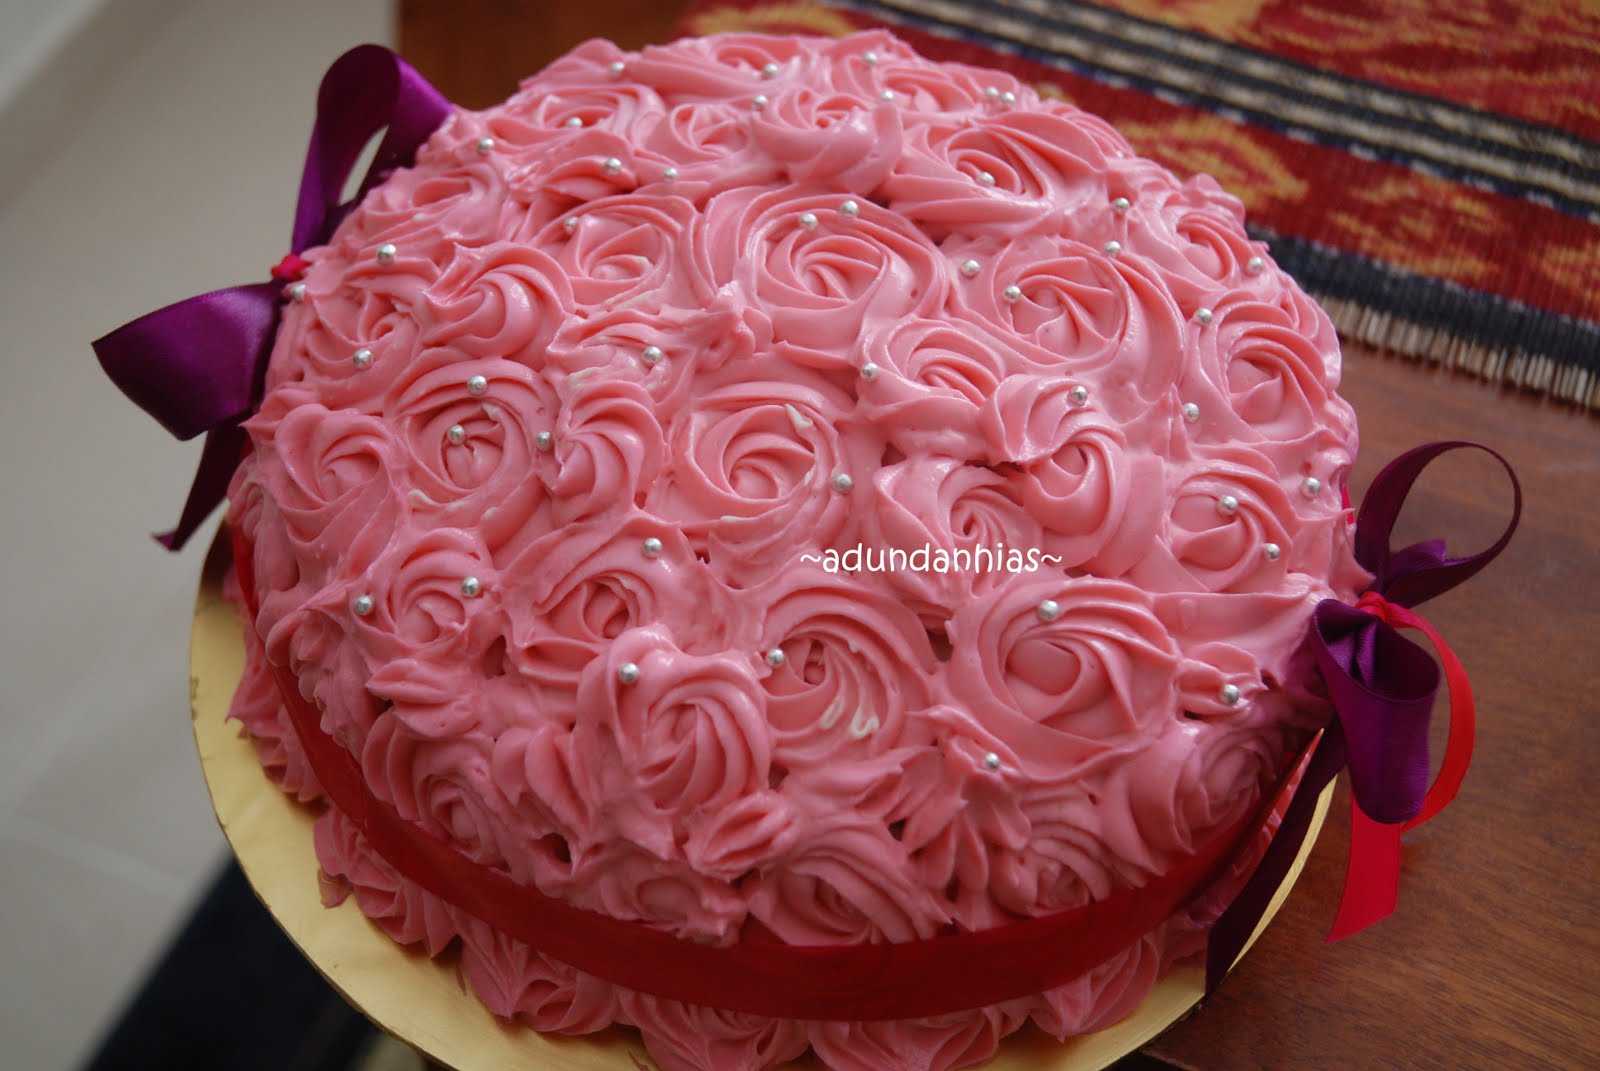 Qnineteen Delights: SWIRL ROSES RED VELVET CAKE